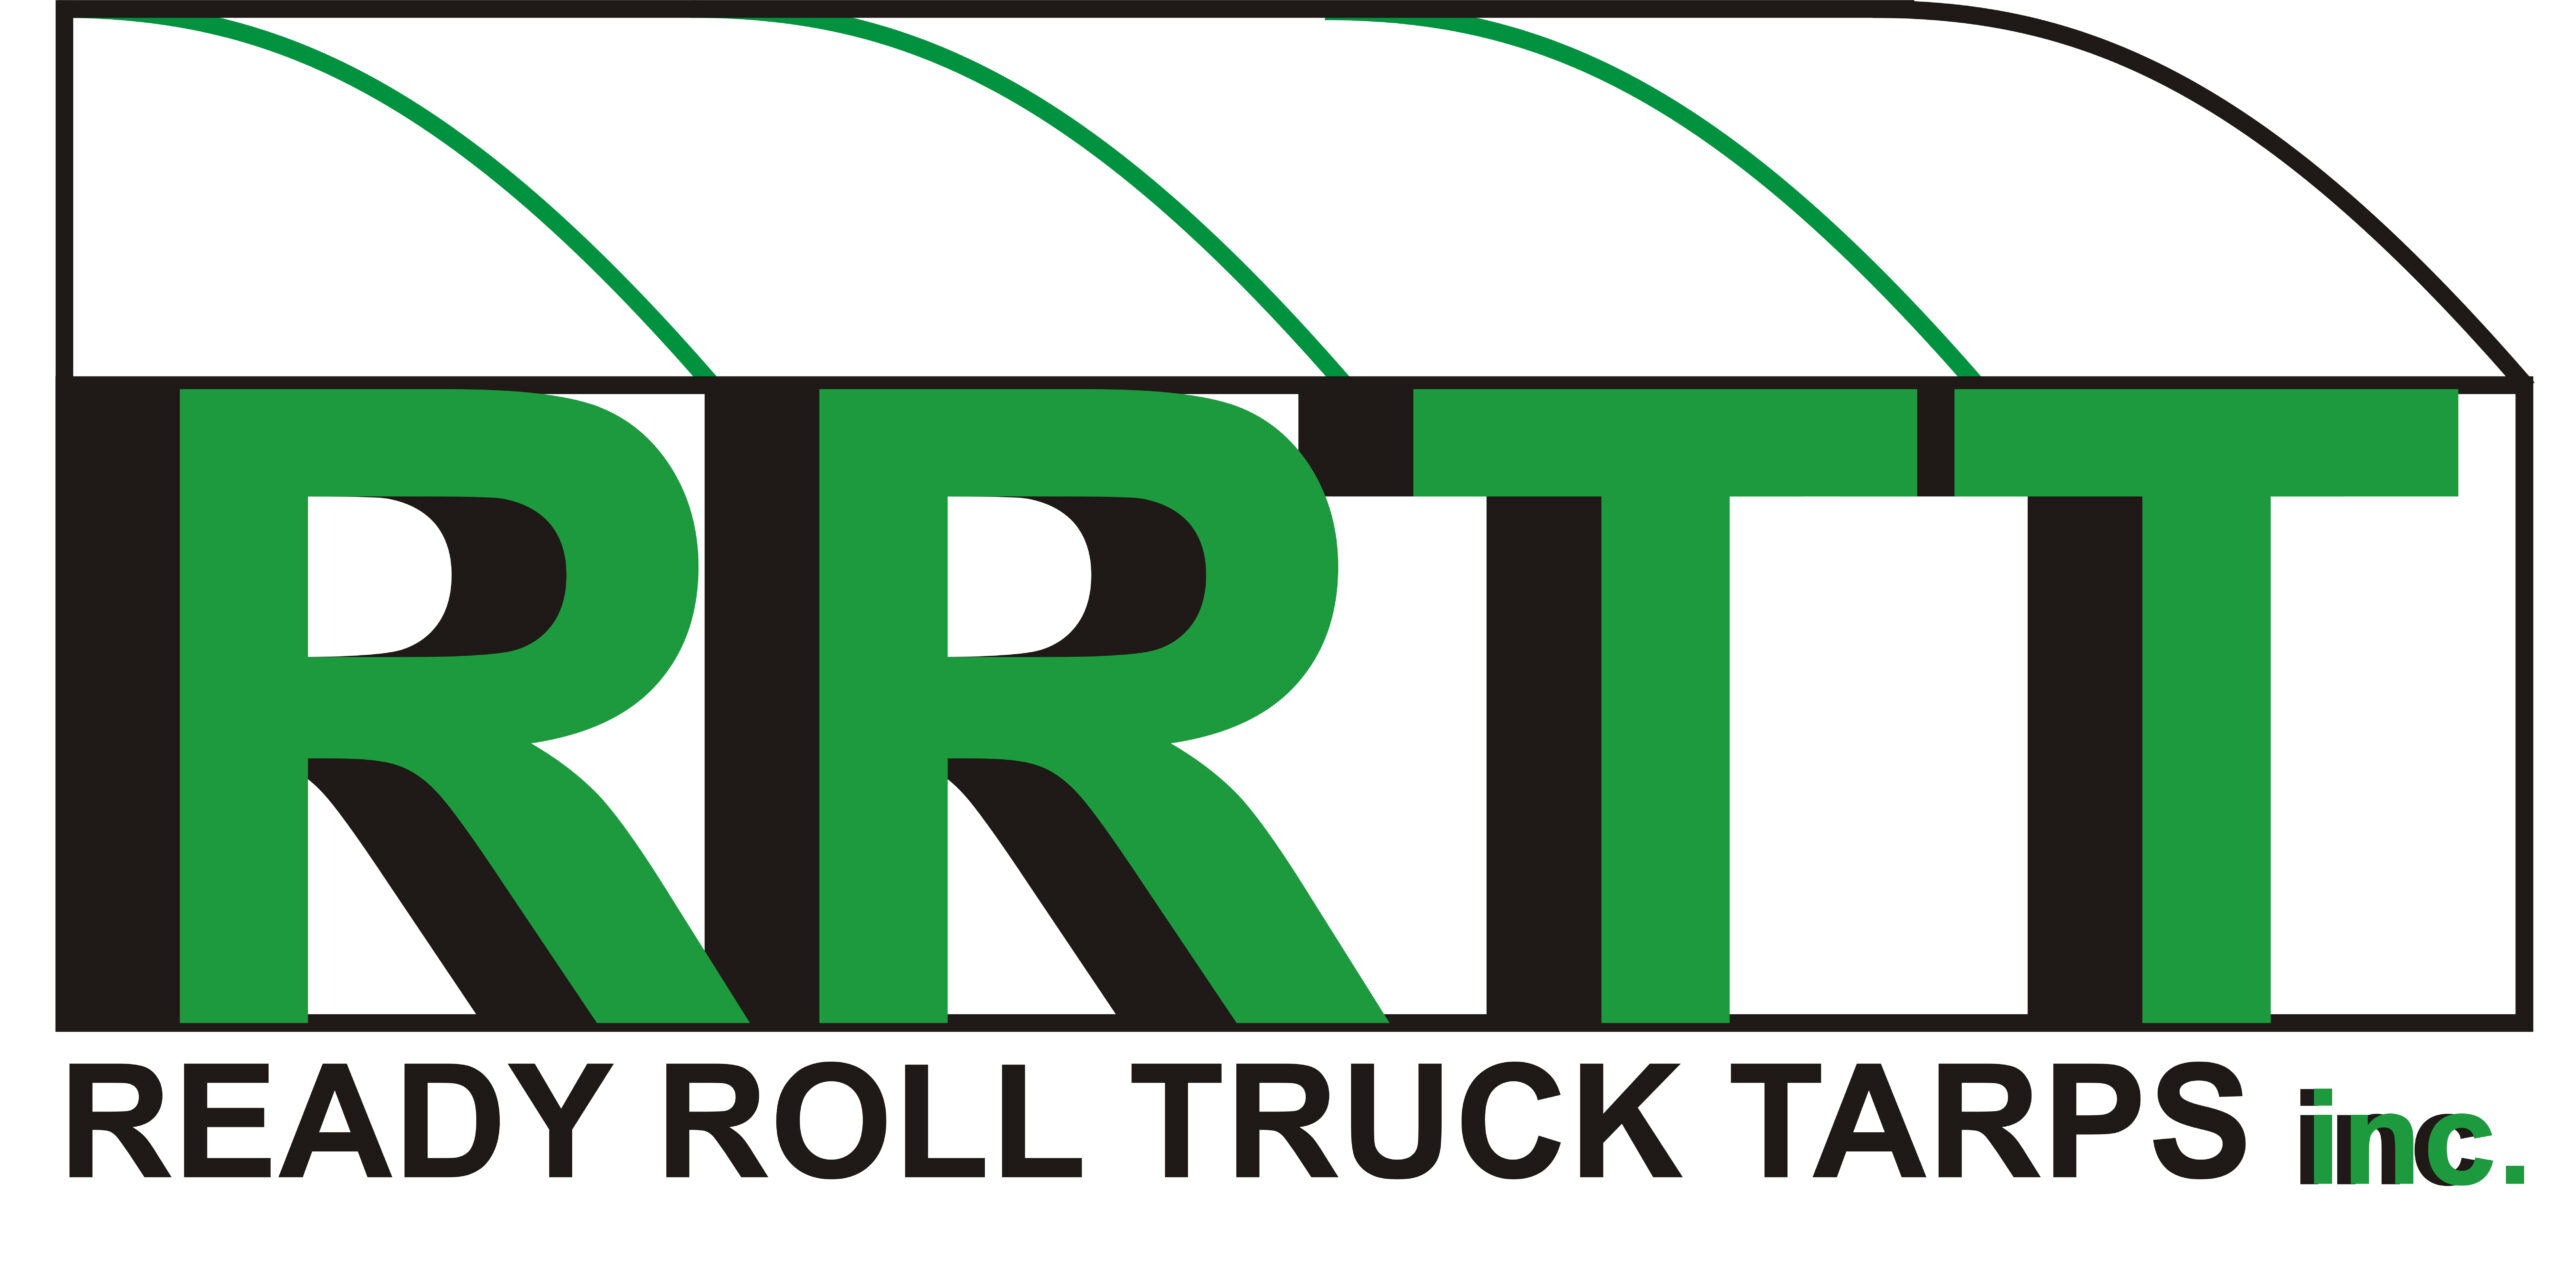 Ready Roll Truck Tarps Inc.